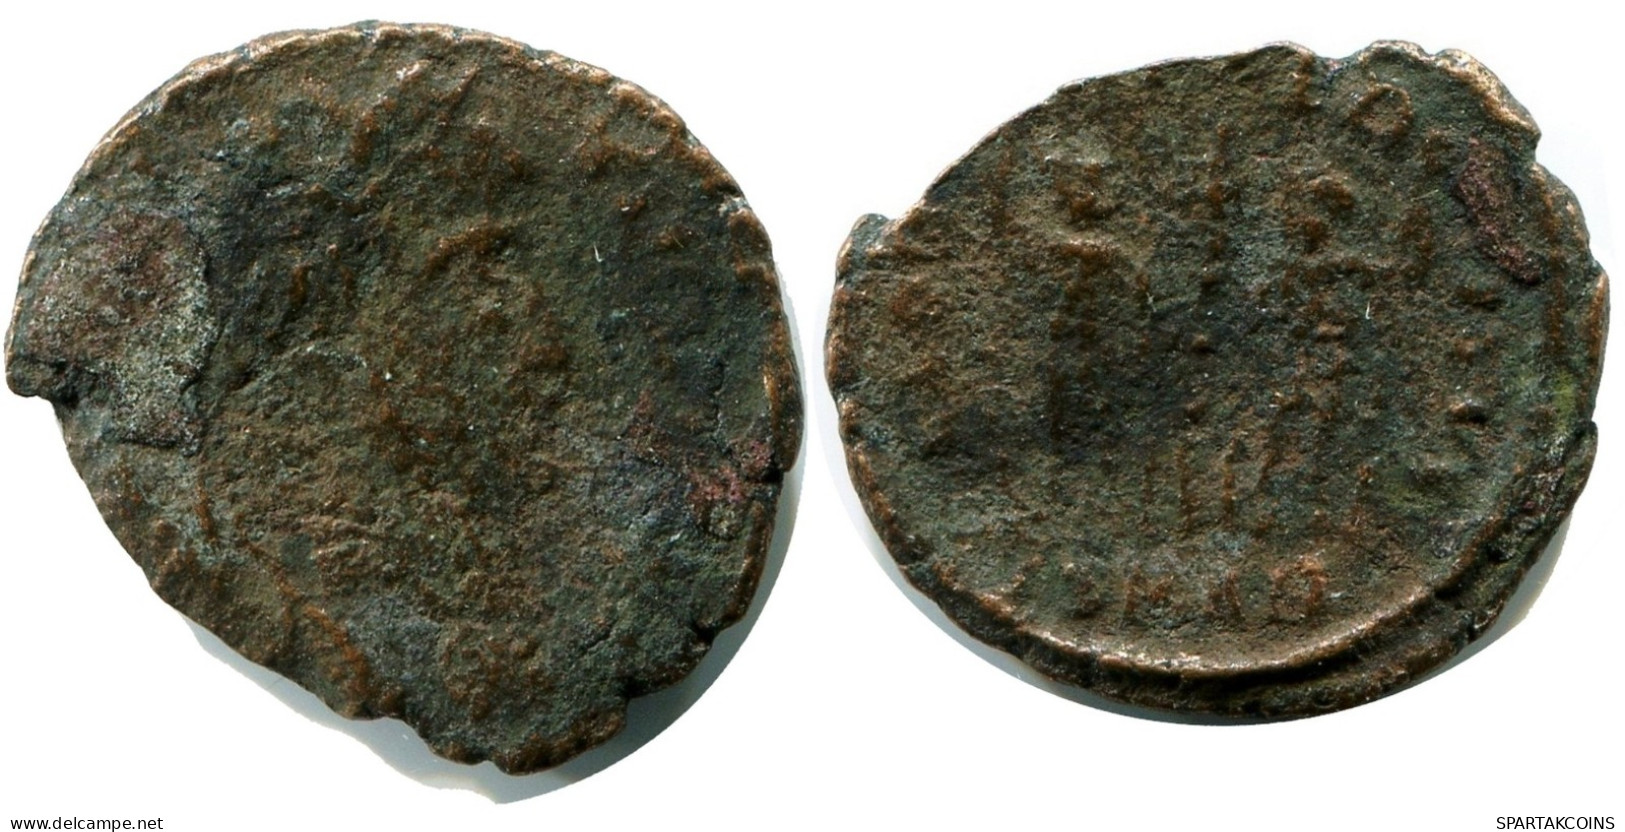 ROMAN Coin MINTED IN ANTIOCH FOUND IN IHNASYAH HOARD EGYPT #ANC11294.14.D.A - Der Christlischen Kaiser (307 / 363)